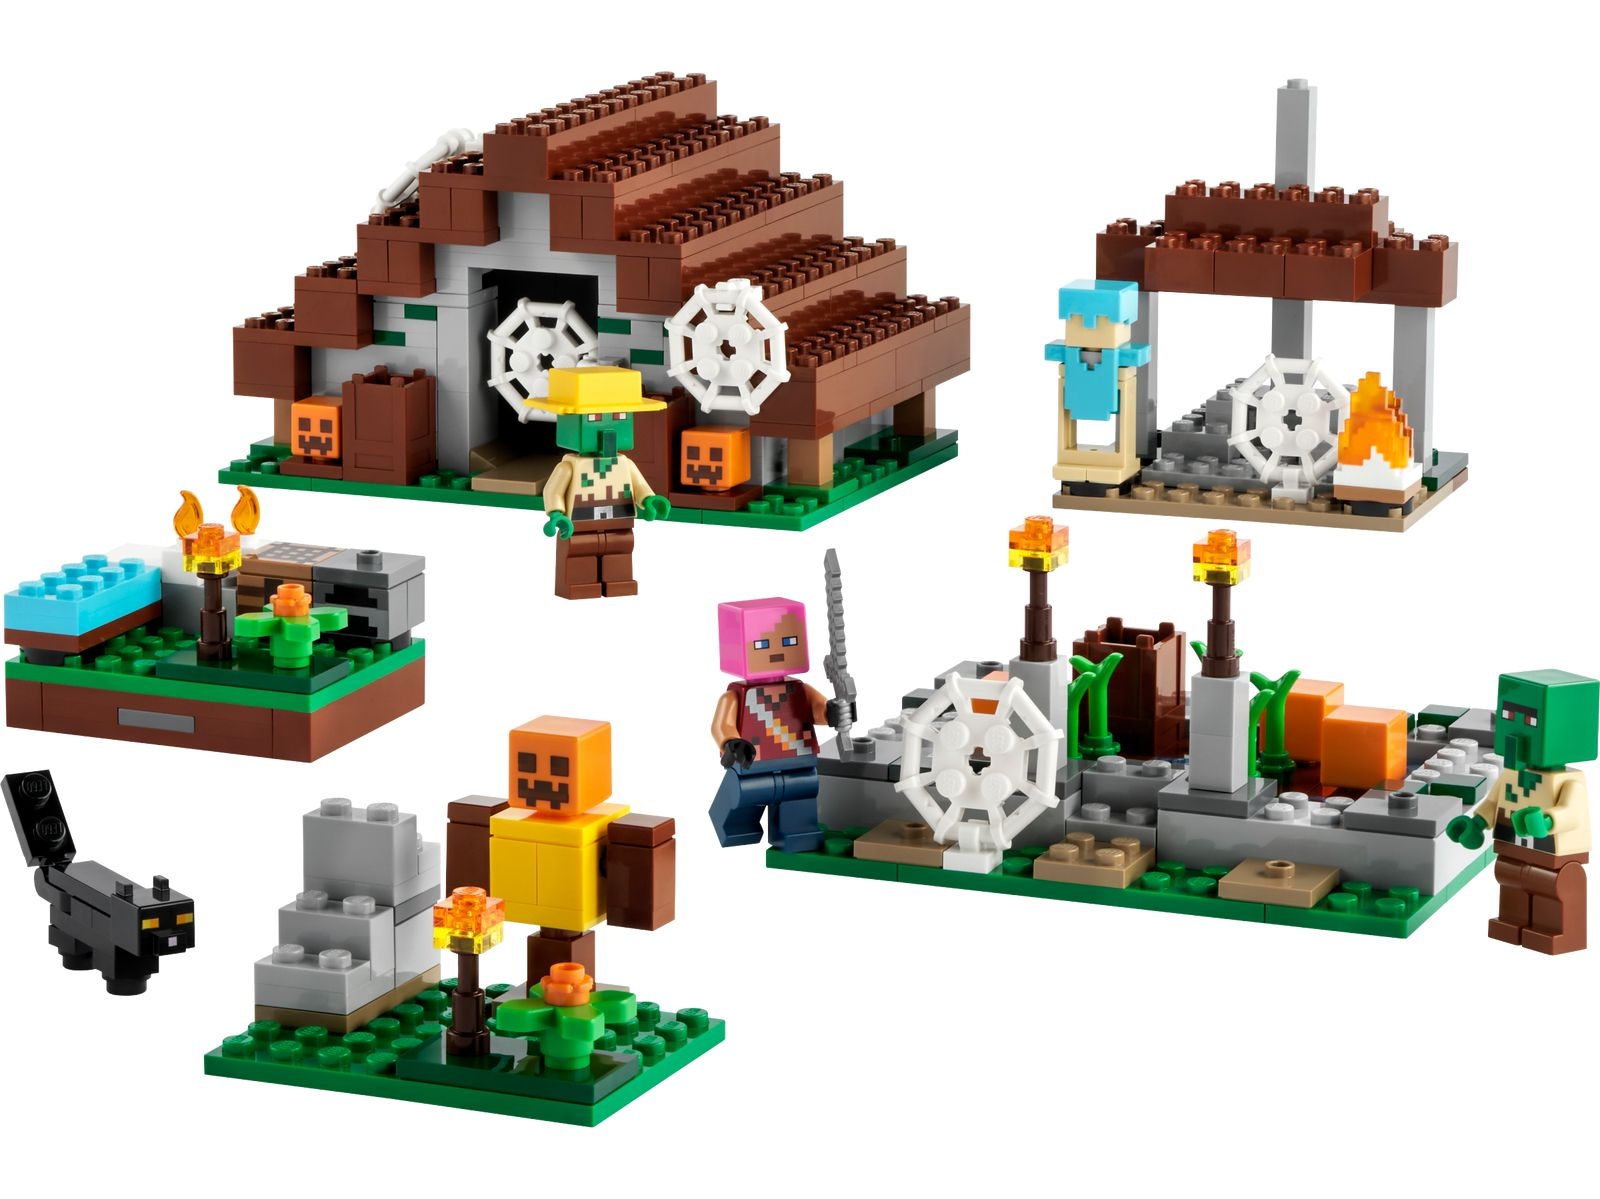 LEGO Minecraft - Opuszczona wioska (21190)